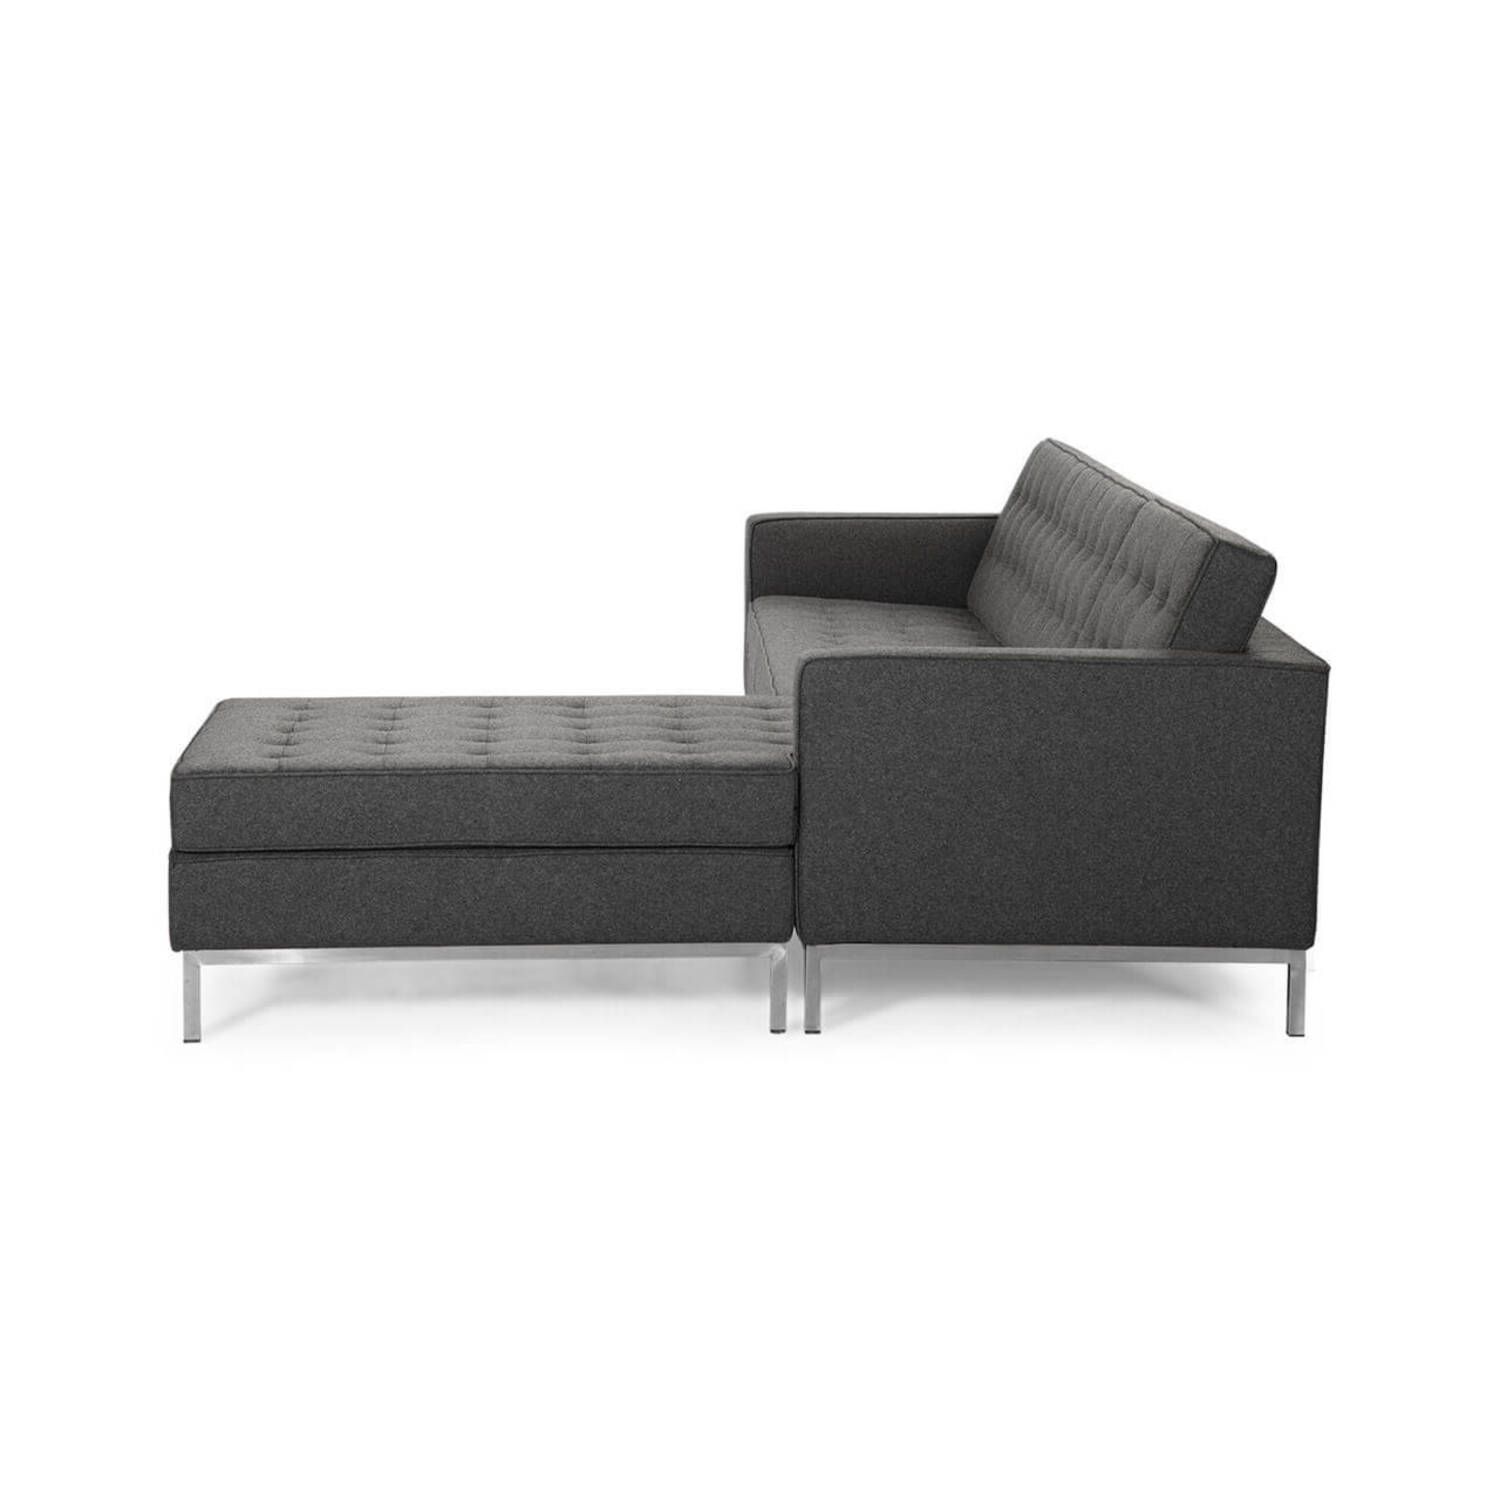 Темно-серый модульный диван Florence